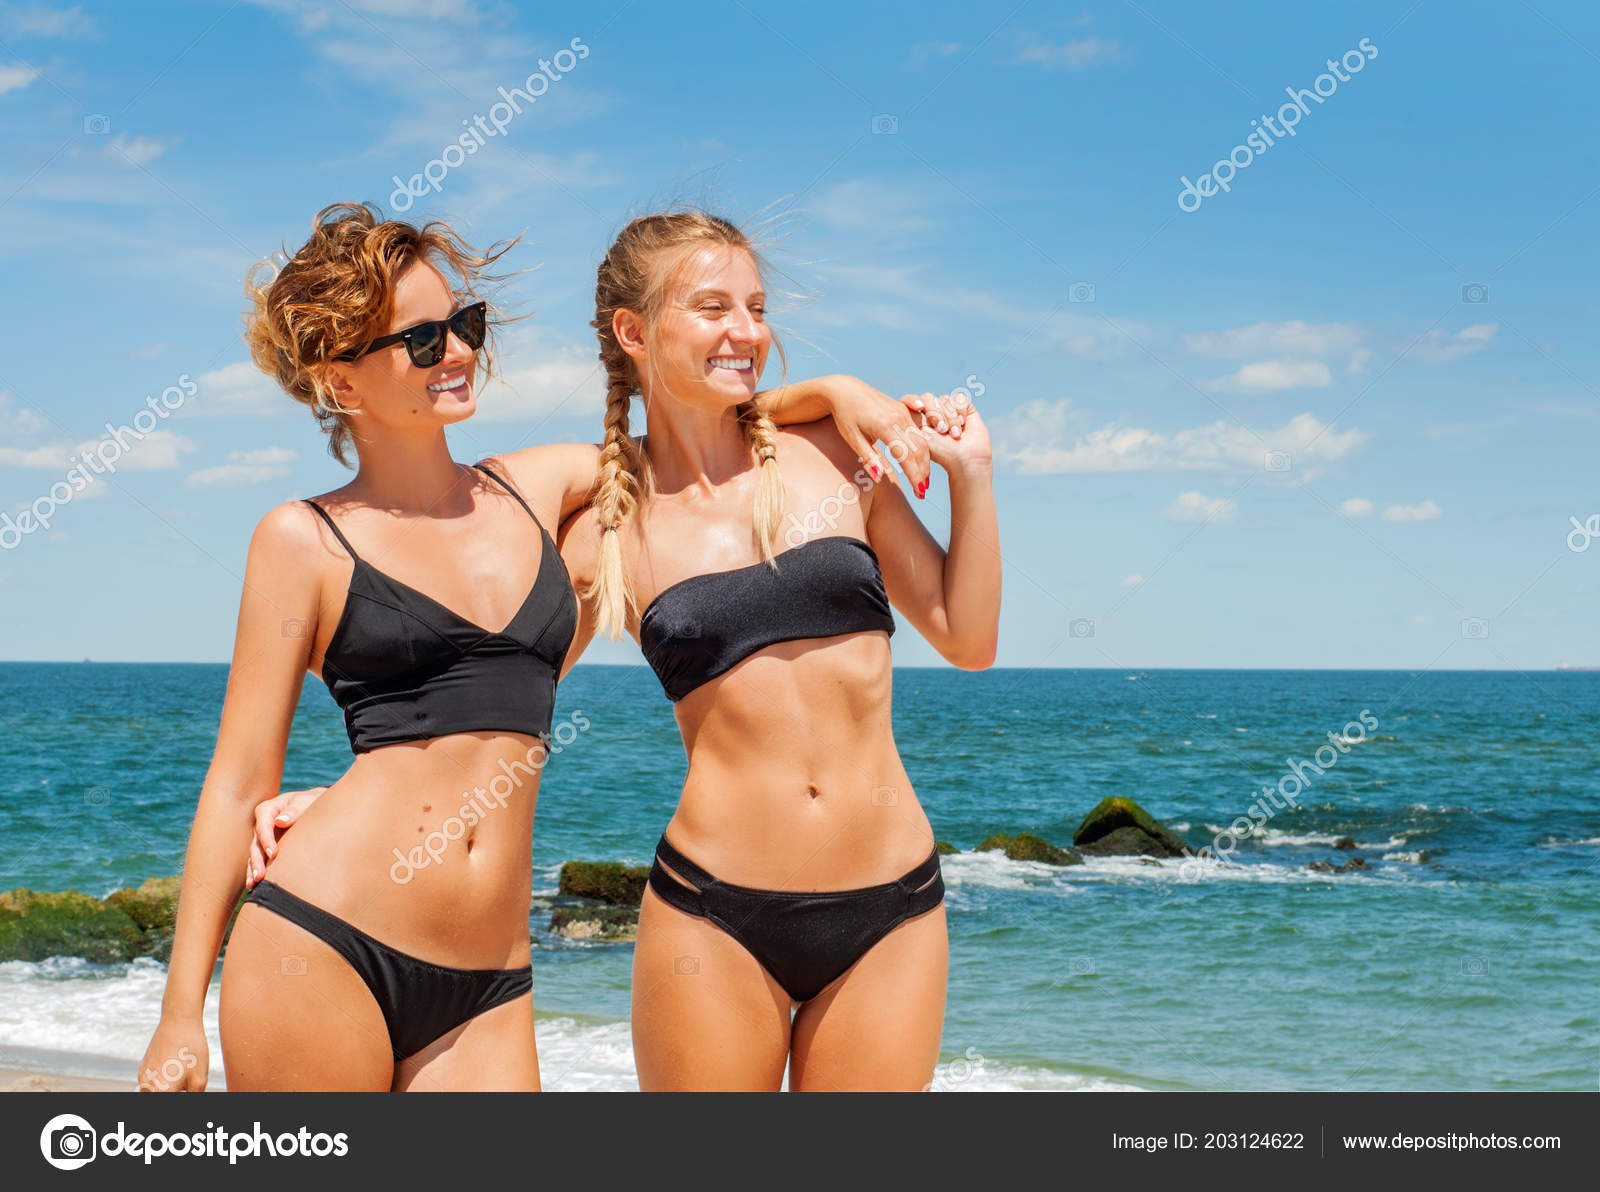 Beach bikini friend fun woman